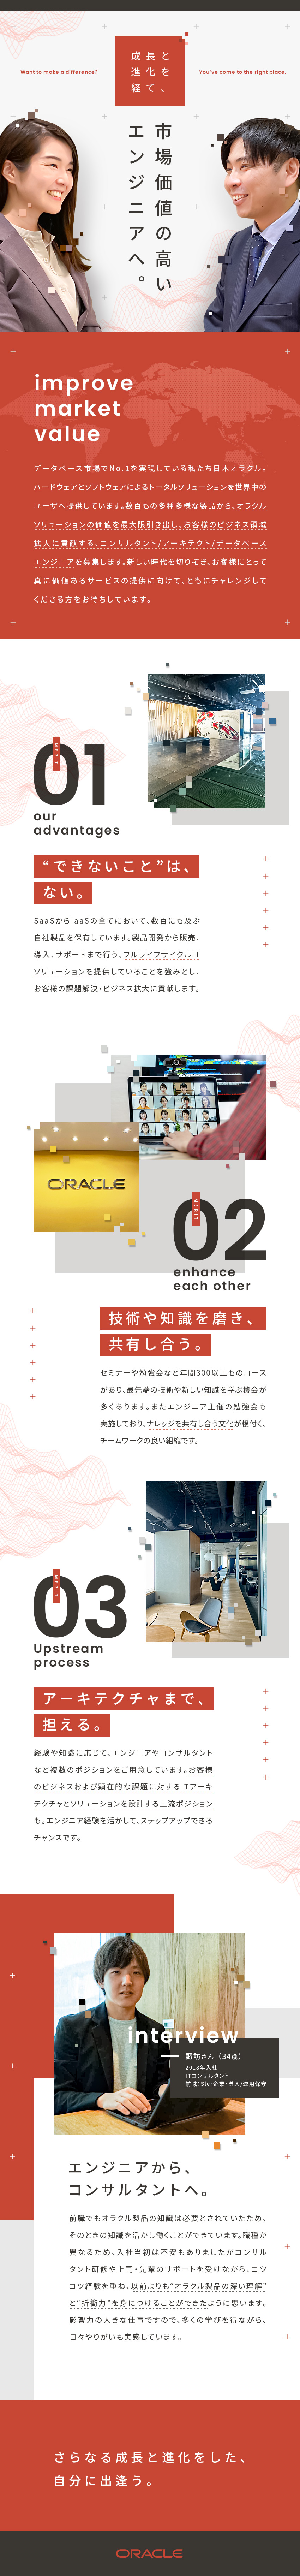 日本オラクル株式会社【スタンダード市場】 オラクル製品の提案・導入を行うコンサルタント